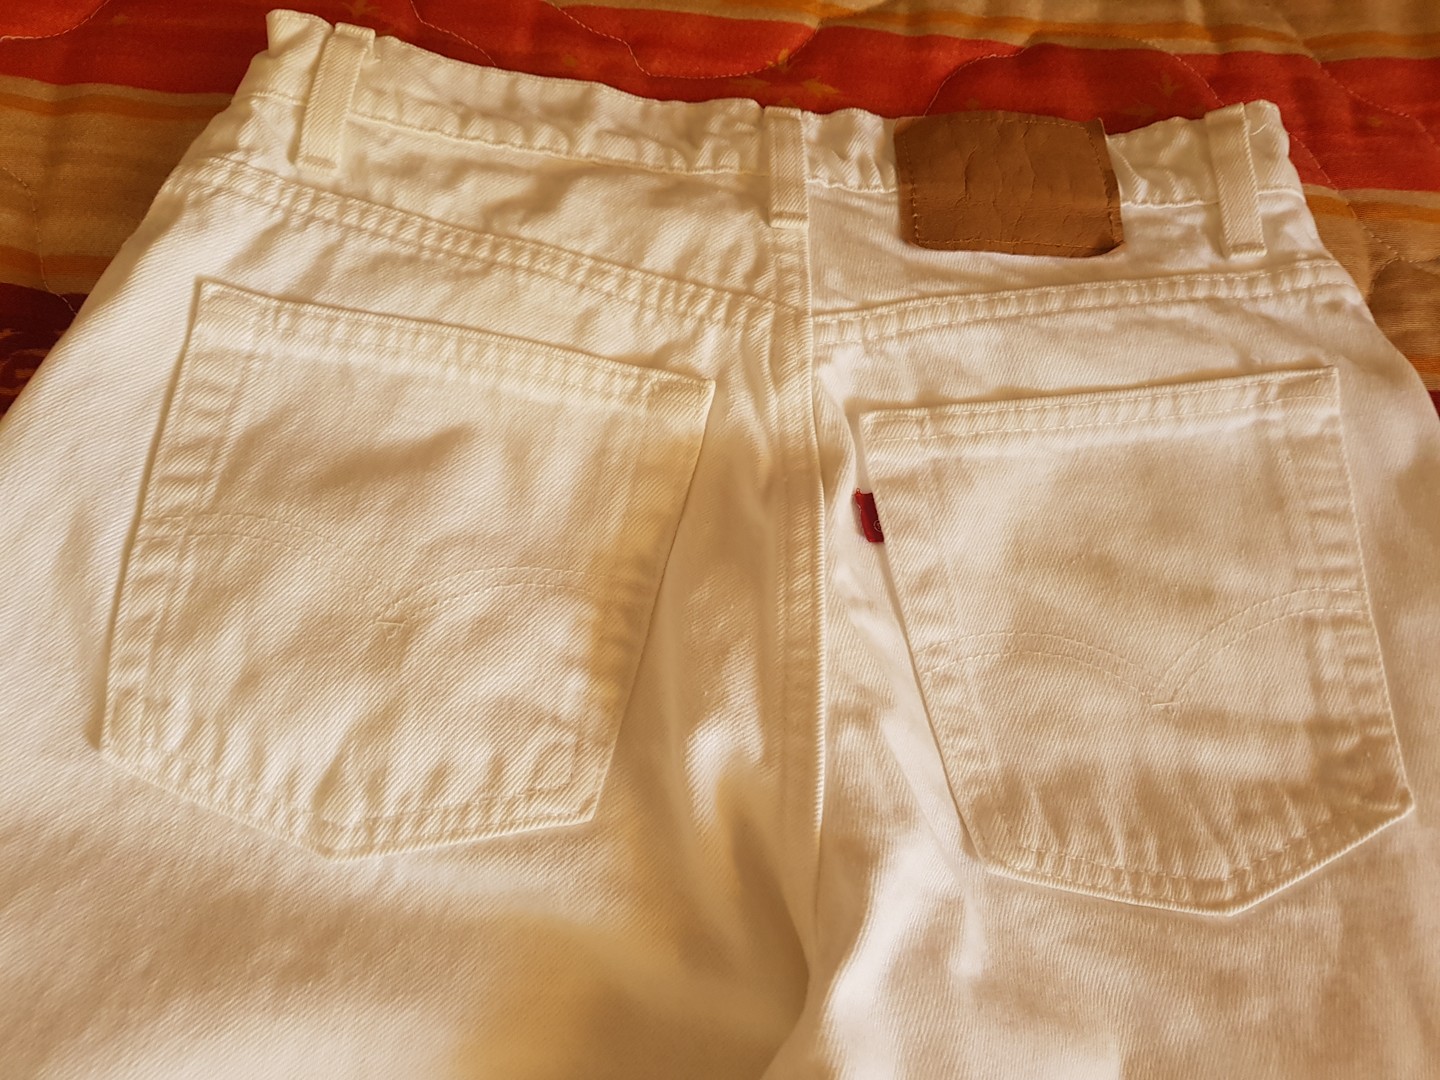 ropa para mujer - Pantalón blanco tela de jeans de algodón, marca Levi's.